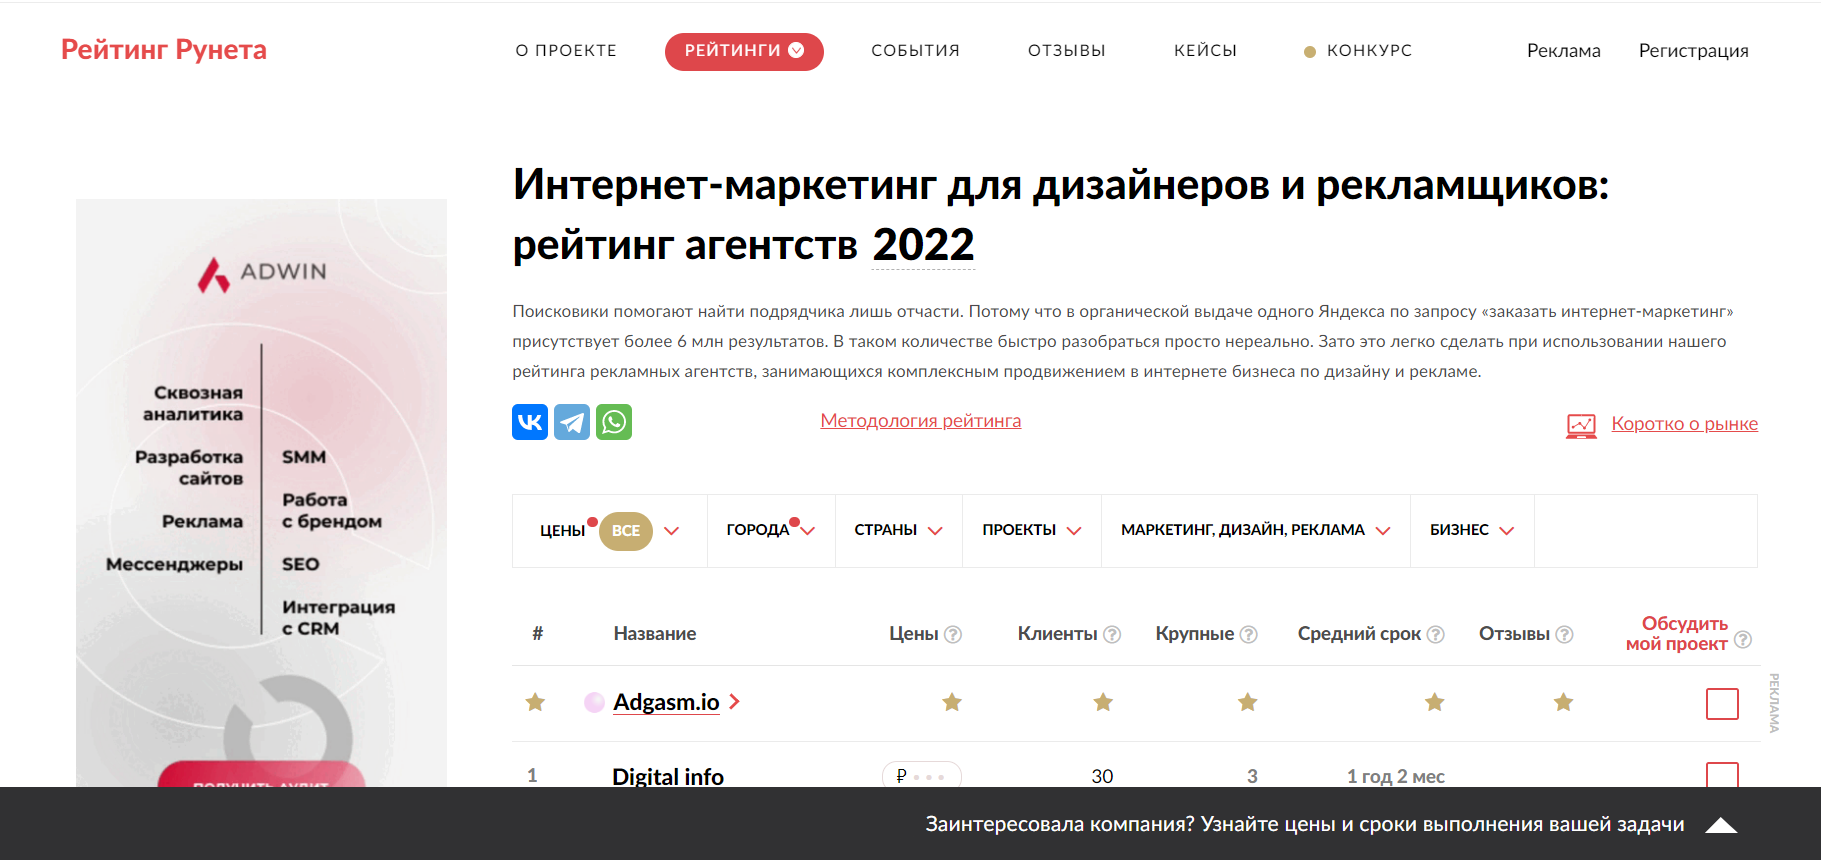 Интернет-маркетинг для дизайнеров и рекламщиков: рейтинг агентств 2022